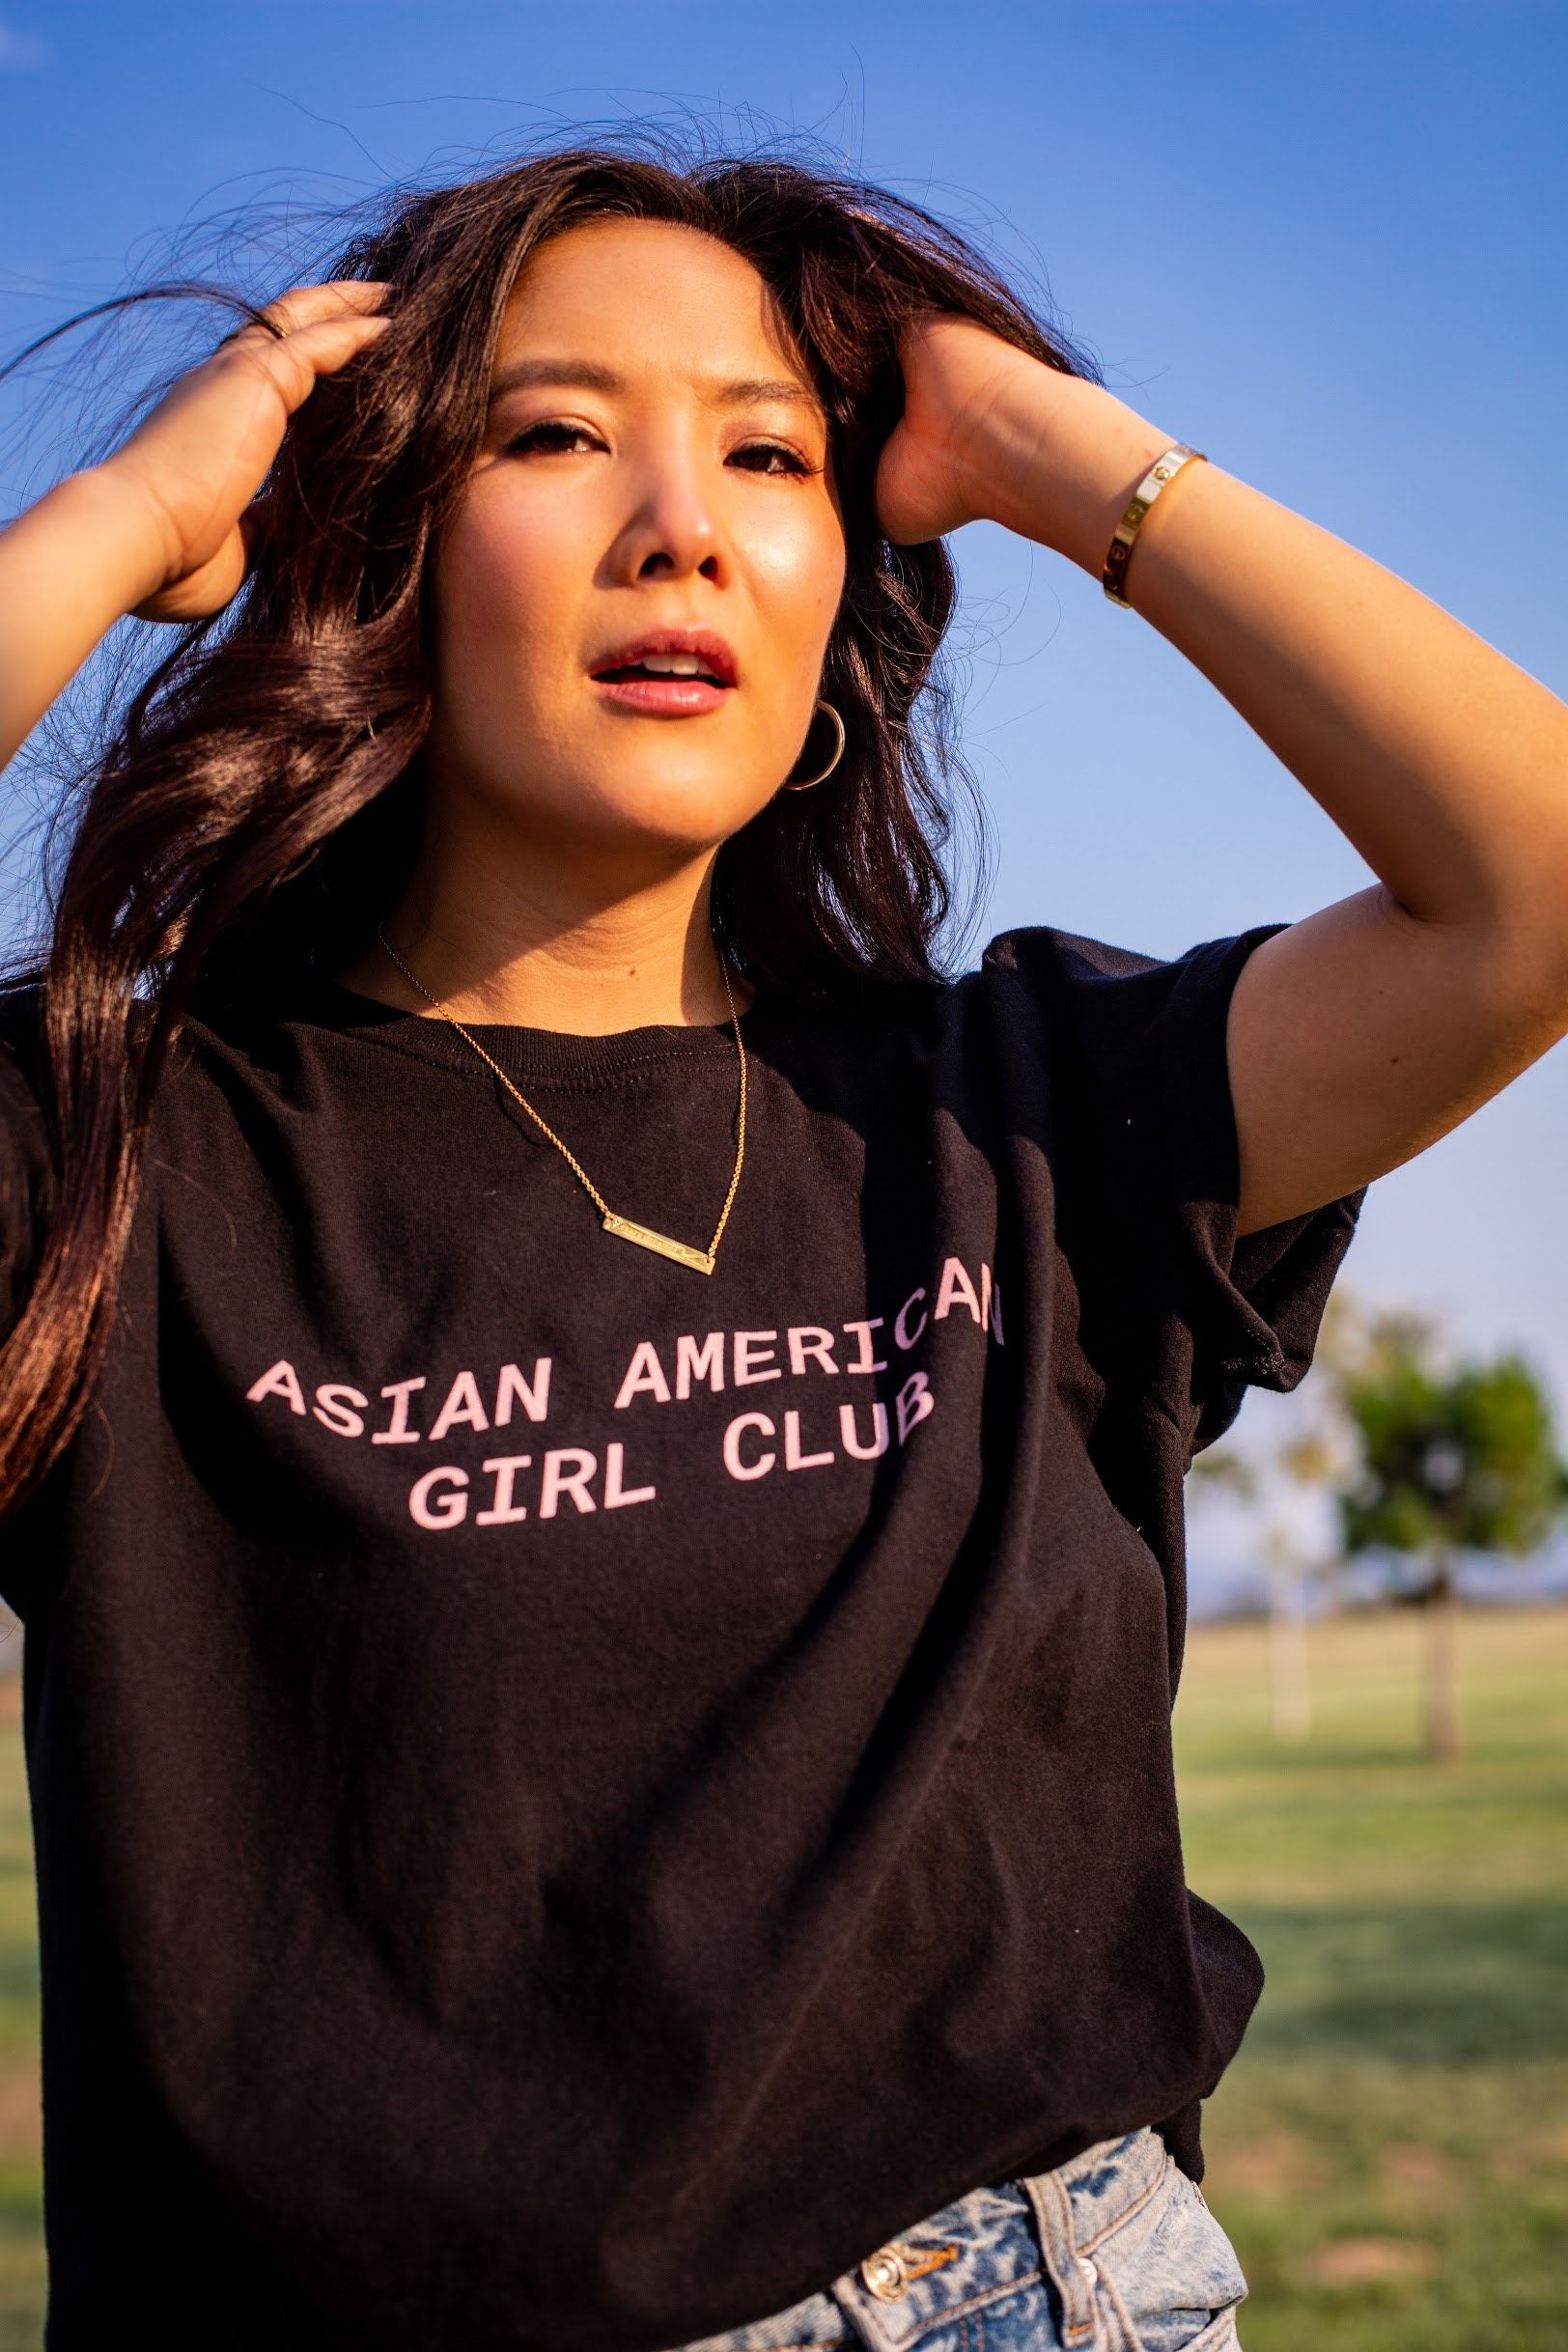 V klubu Asian American Girl Ally Maki so vsi dobrodošli